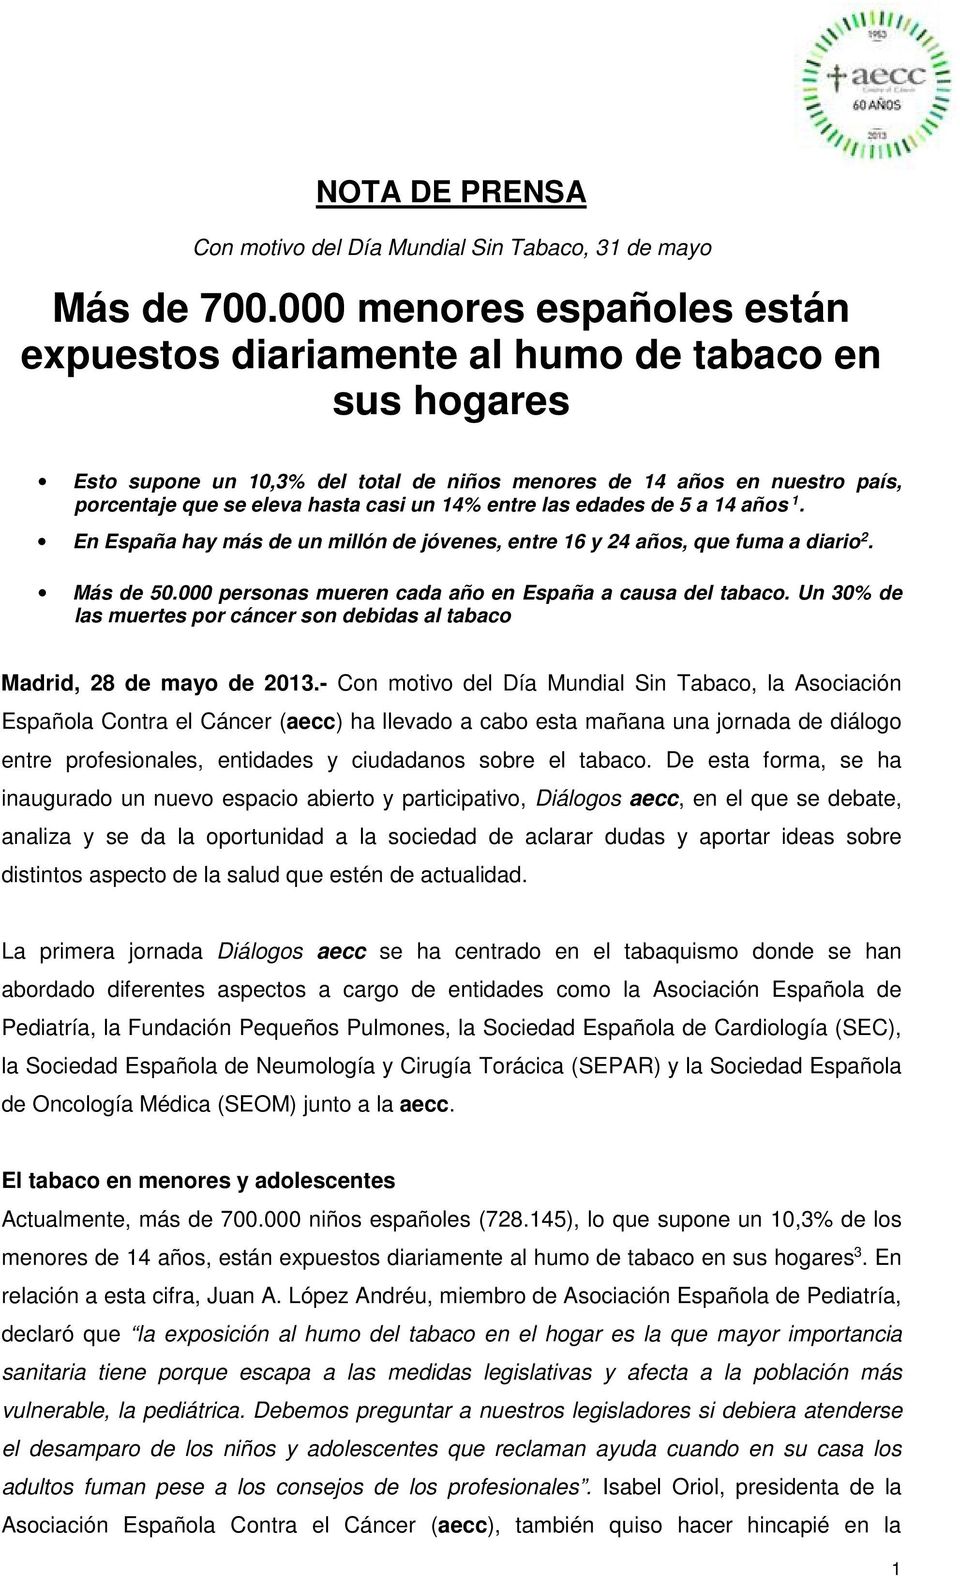 14% entre las edades de 5 a 14 años 1. En España hay más de un millón de jóvenes, entre 16 y 24 años, que fuma a diario 2. Más de 50.000 personas mueren cada año en España a causa del tabaco.